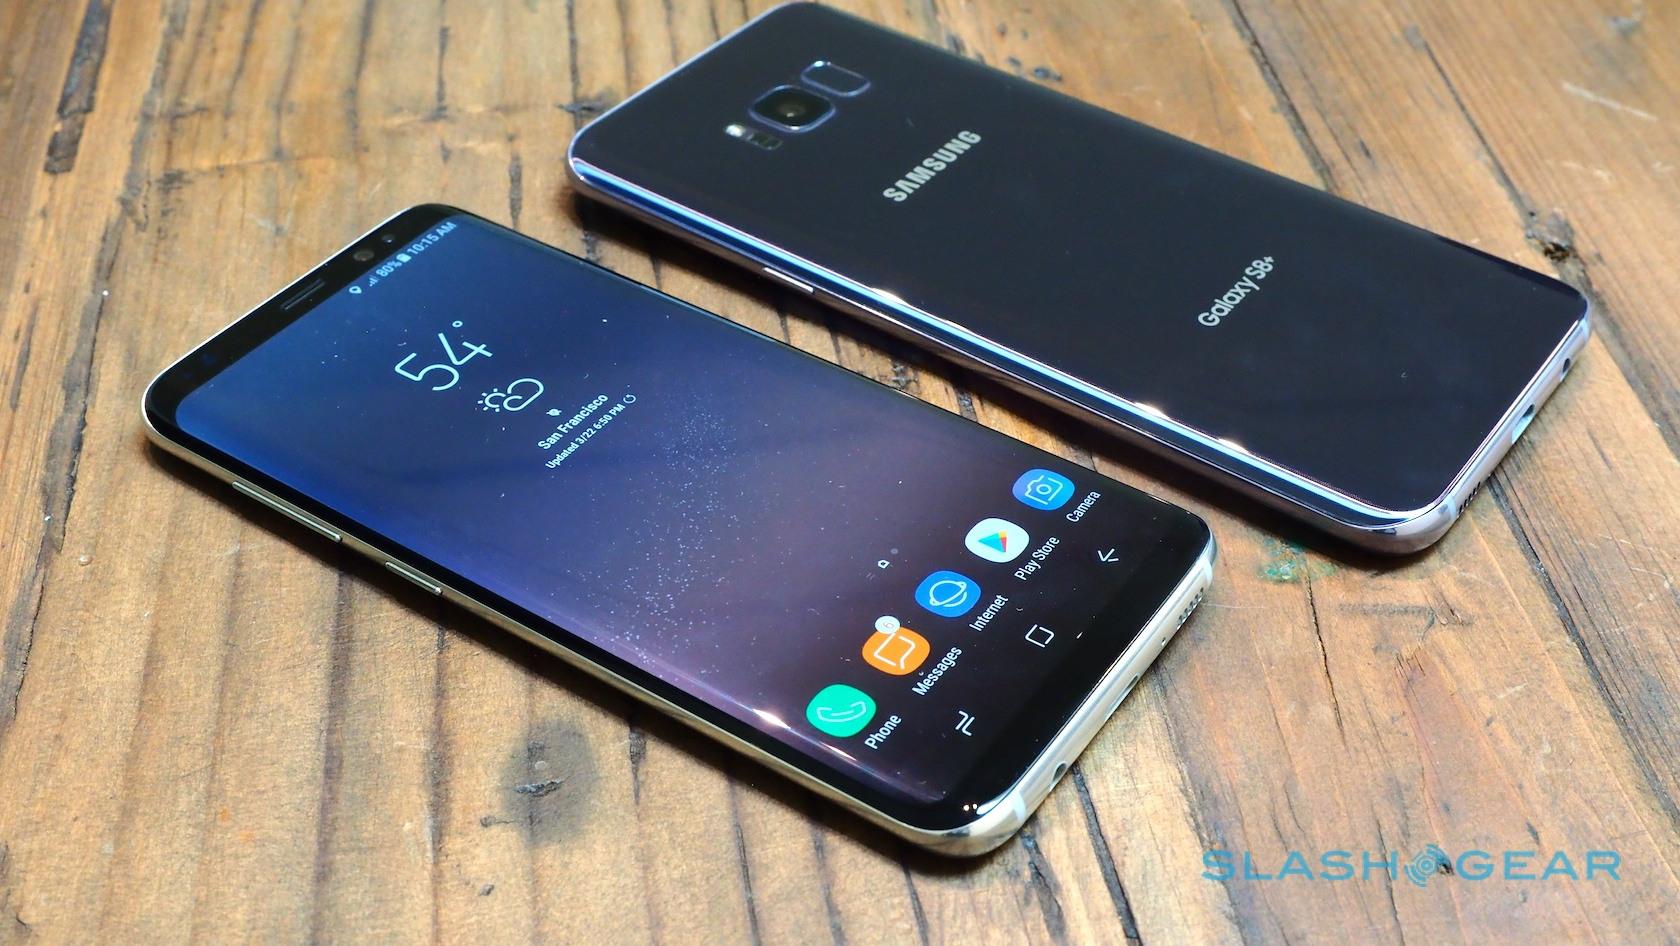 Китайский s 8. Китайский самсунг галакси s 8. Галакси 8s китайский. Samsung s8 китайская копия. Как выглядит китайский галакси с 8.